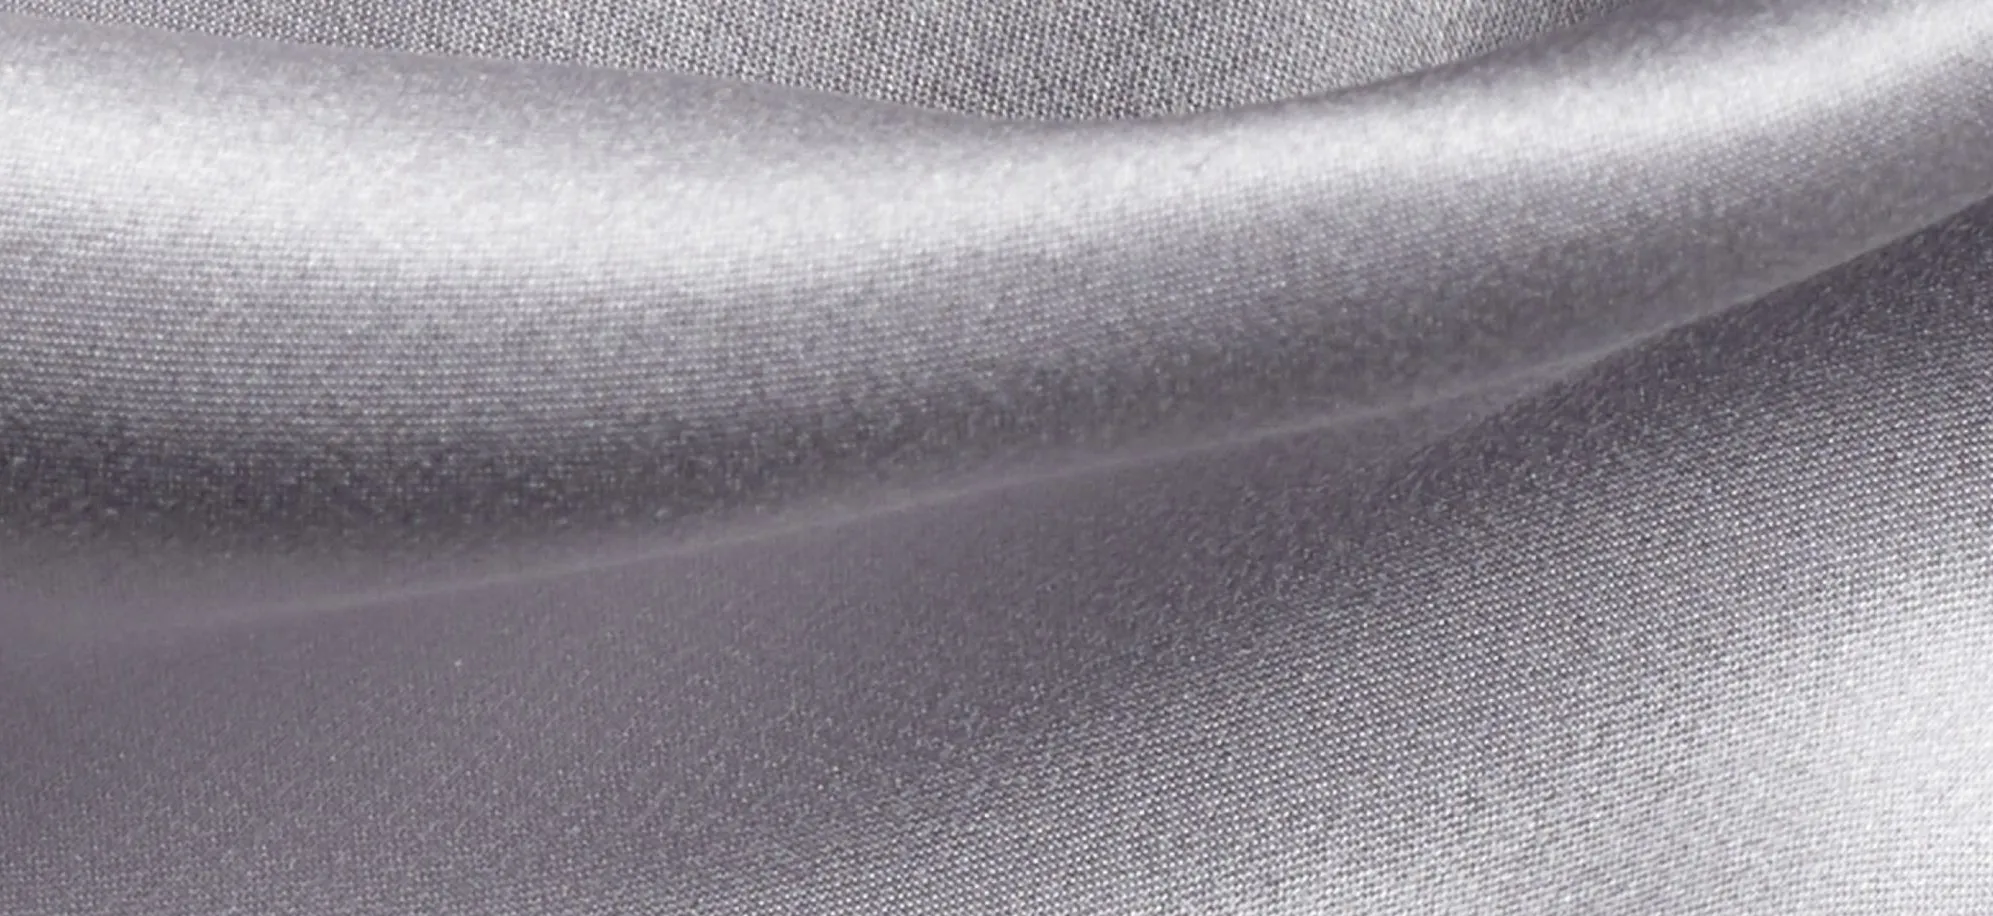 PureCare Pure Silk Pillowcase in Silver by PureCare